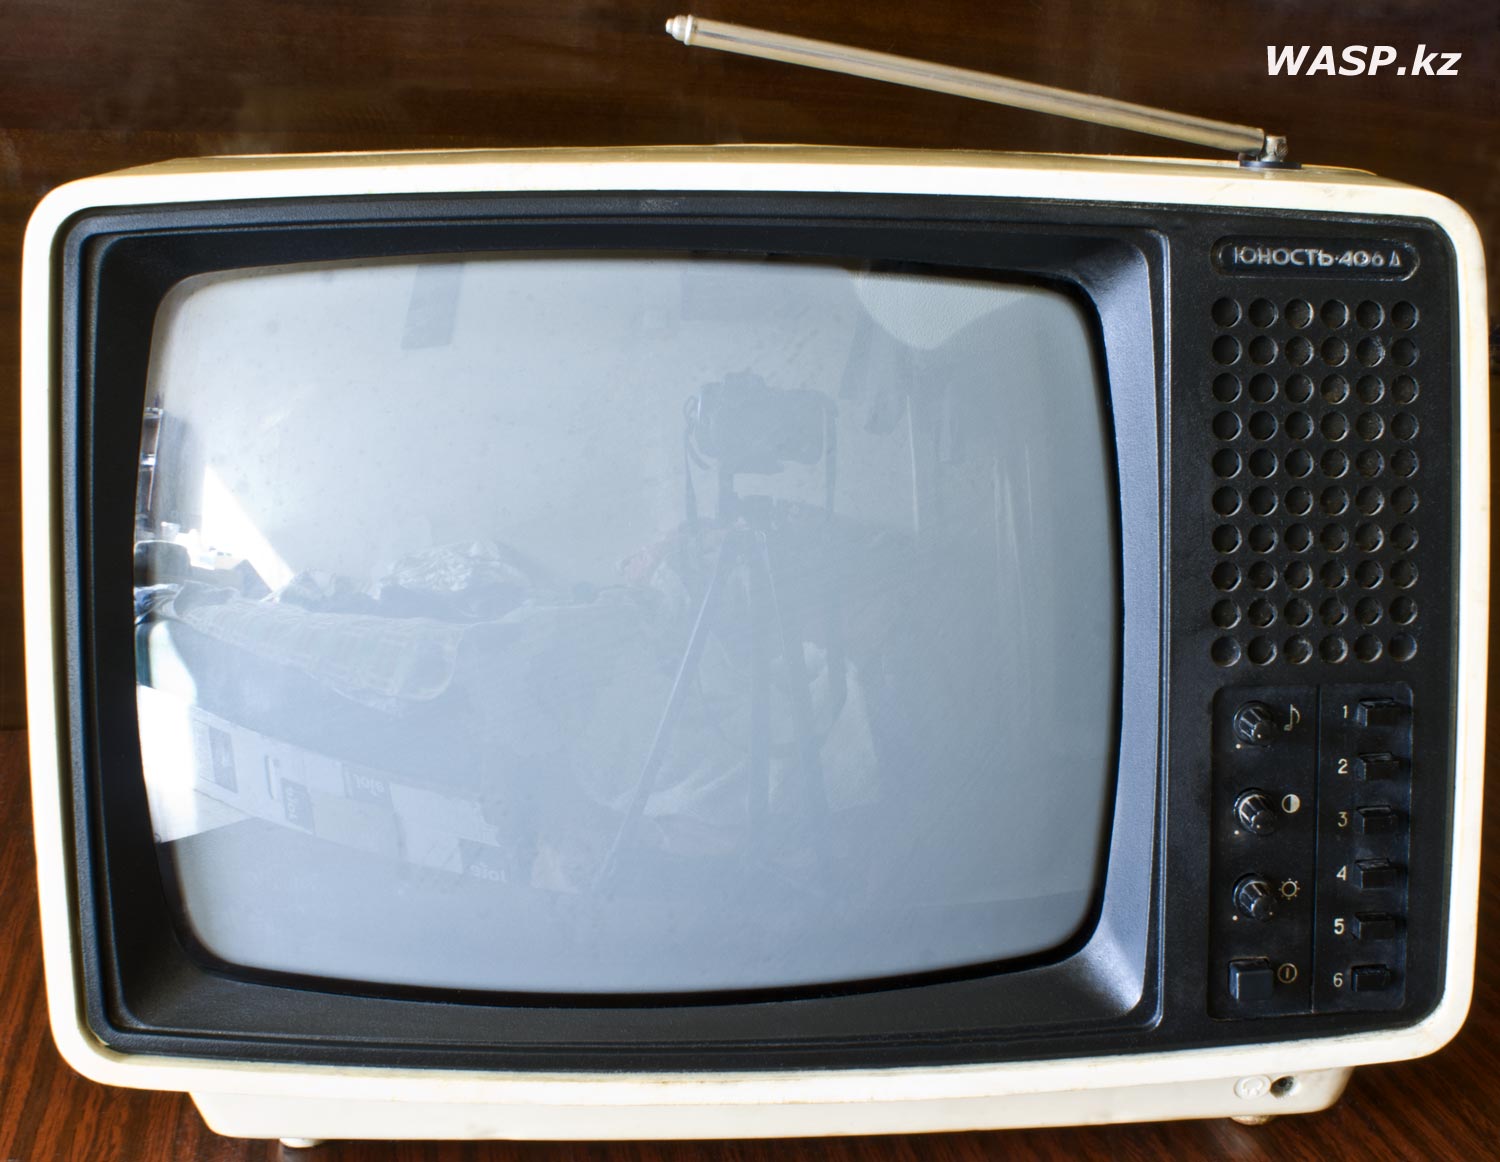 Юность-406Д все об компактном телевизоре, Советский союз